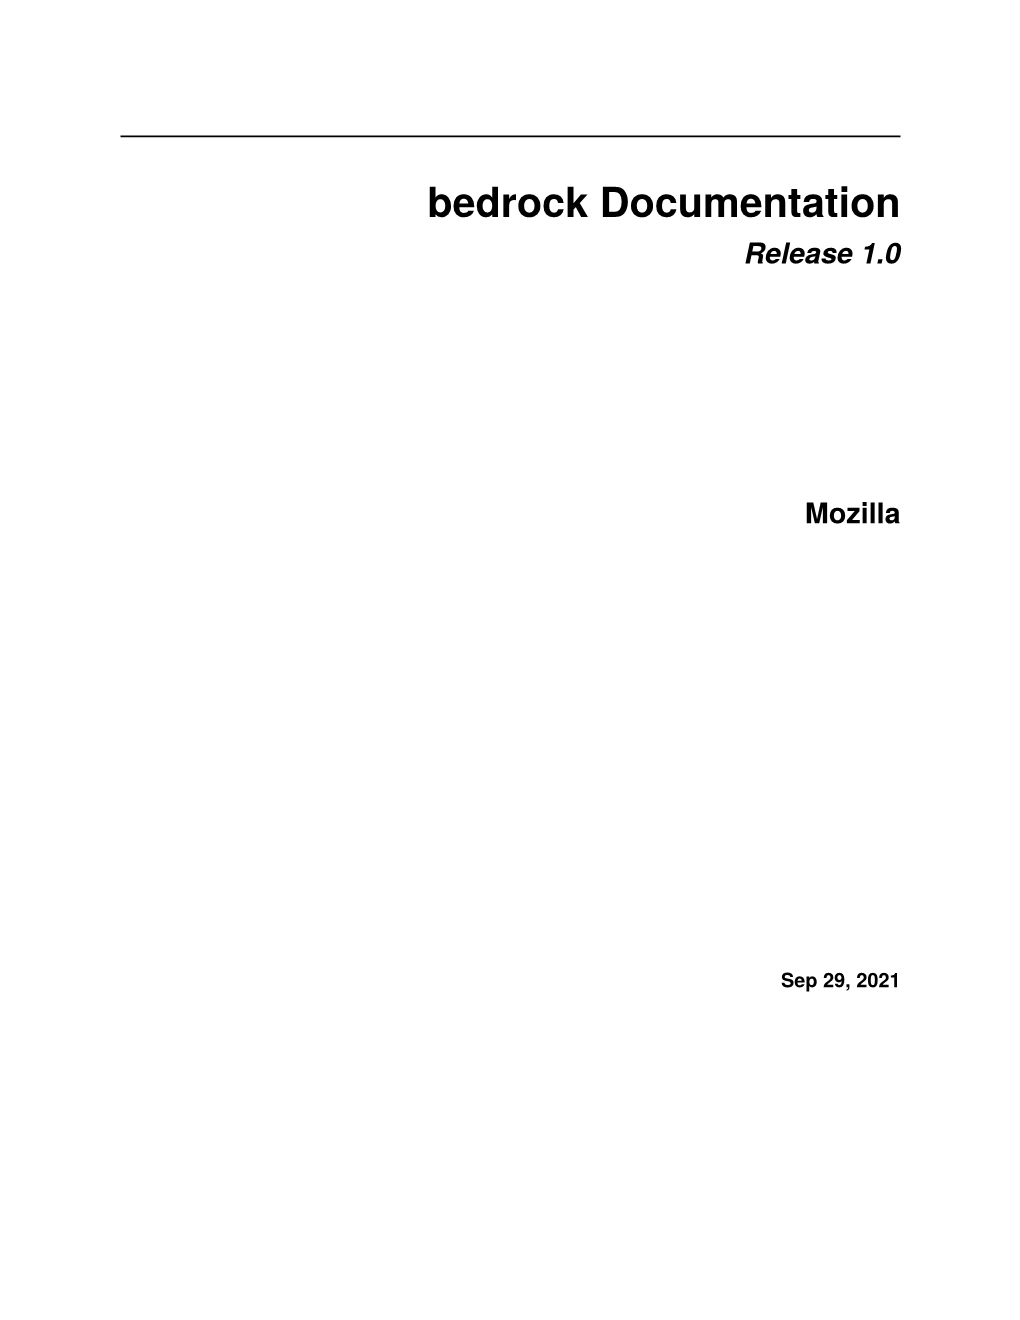 Bedrock Documentation Release 1.0